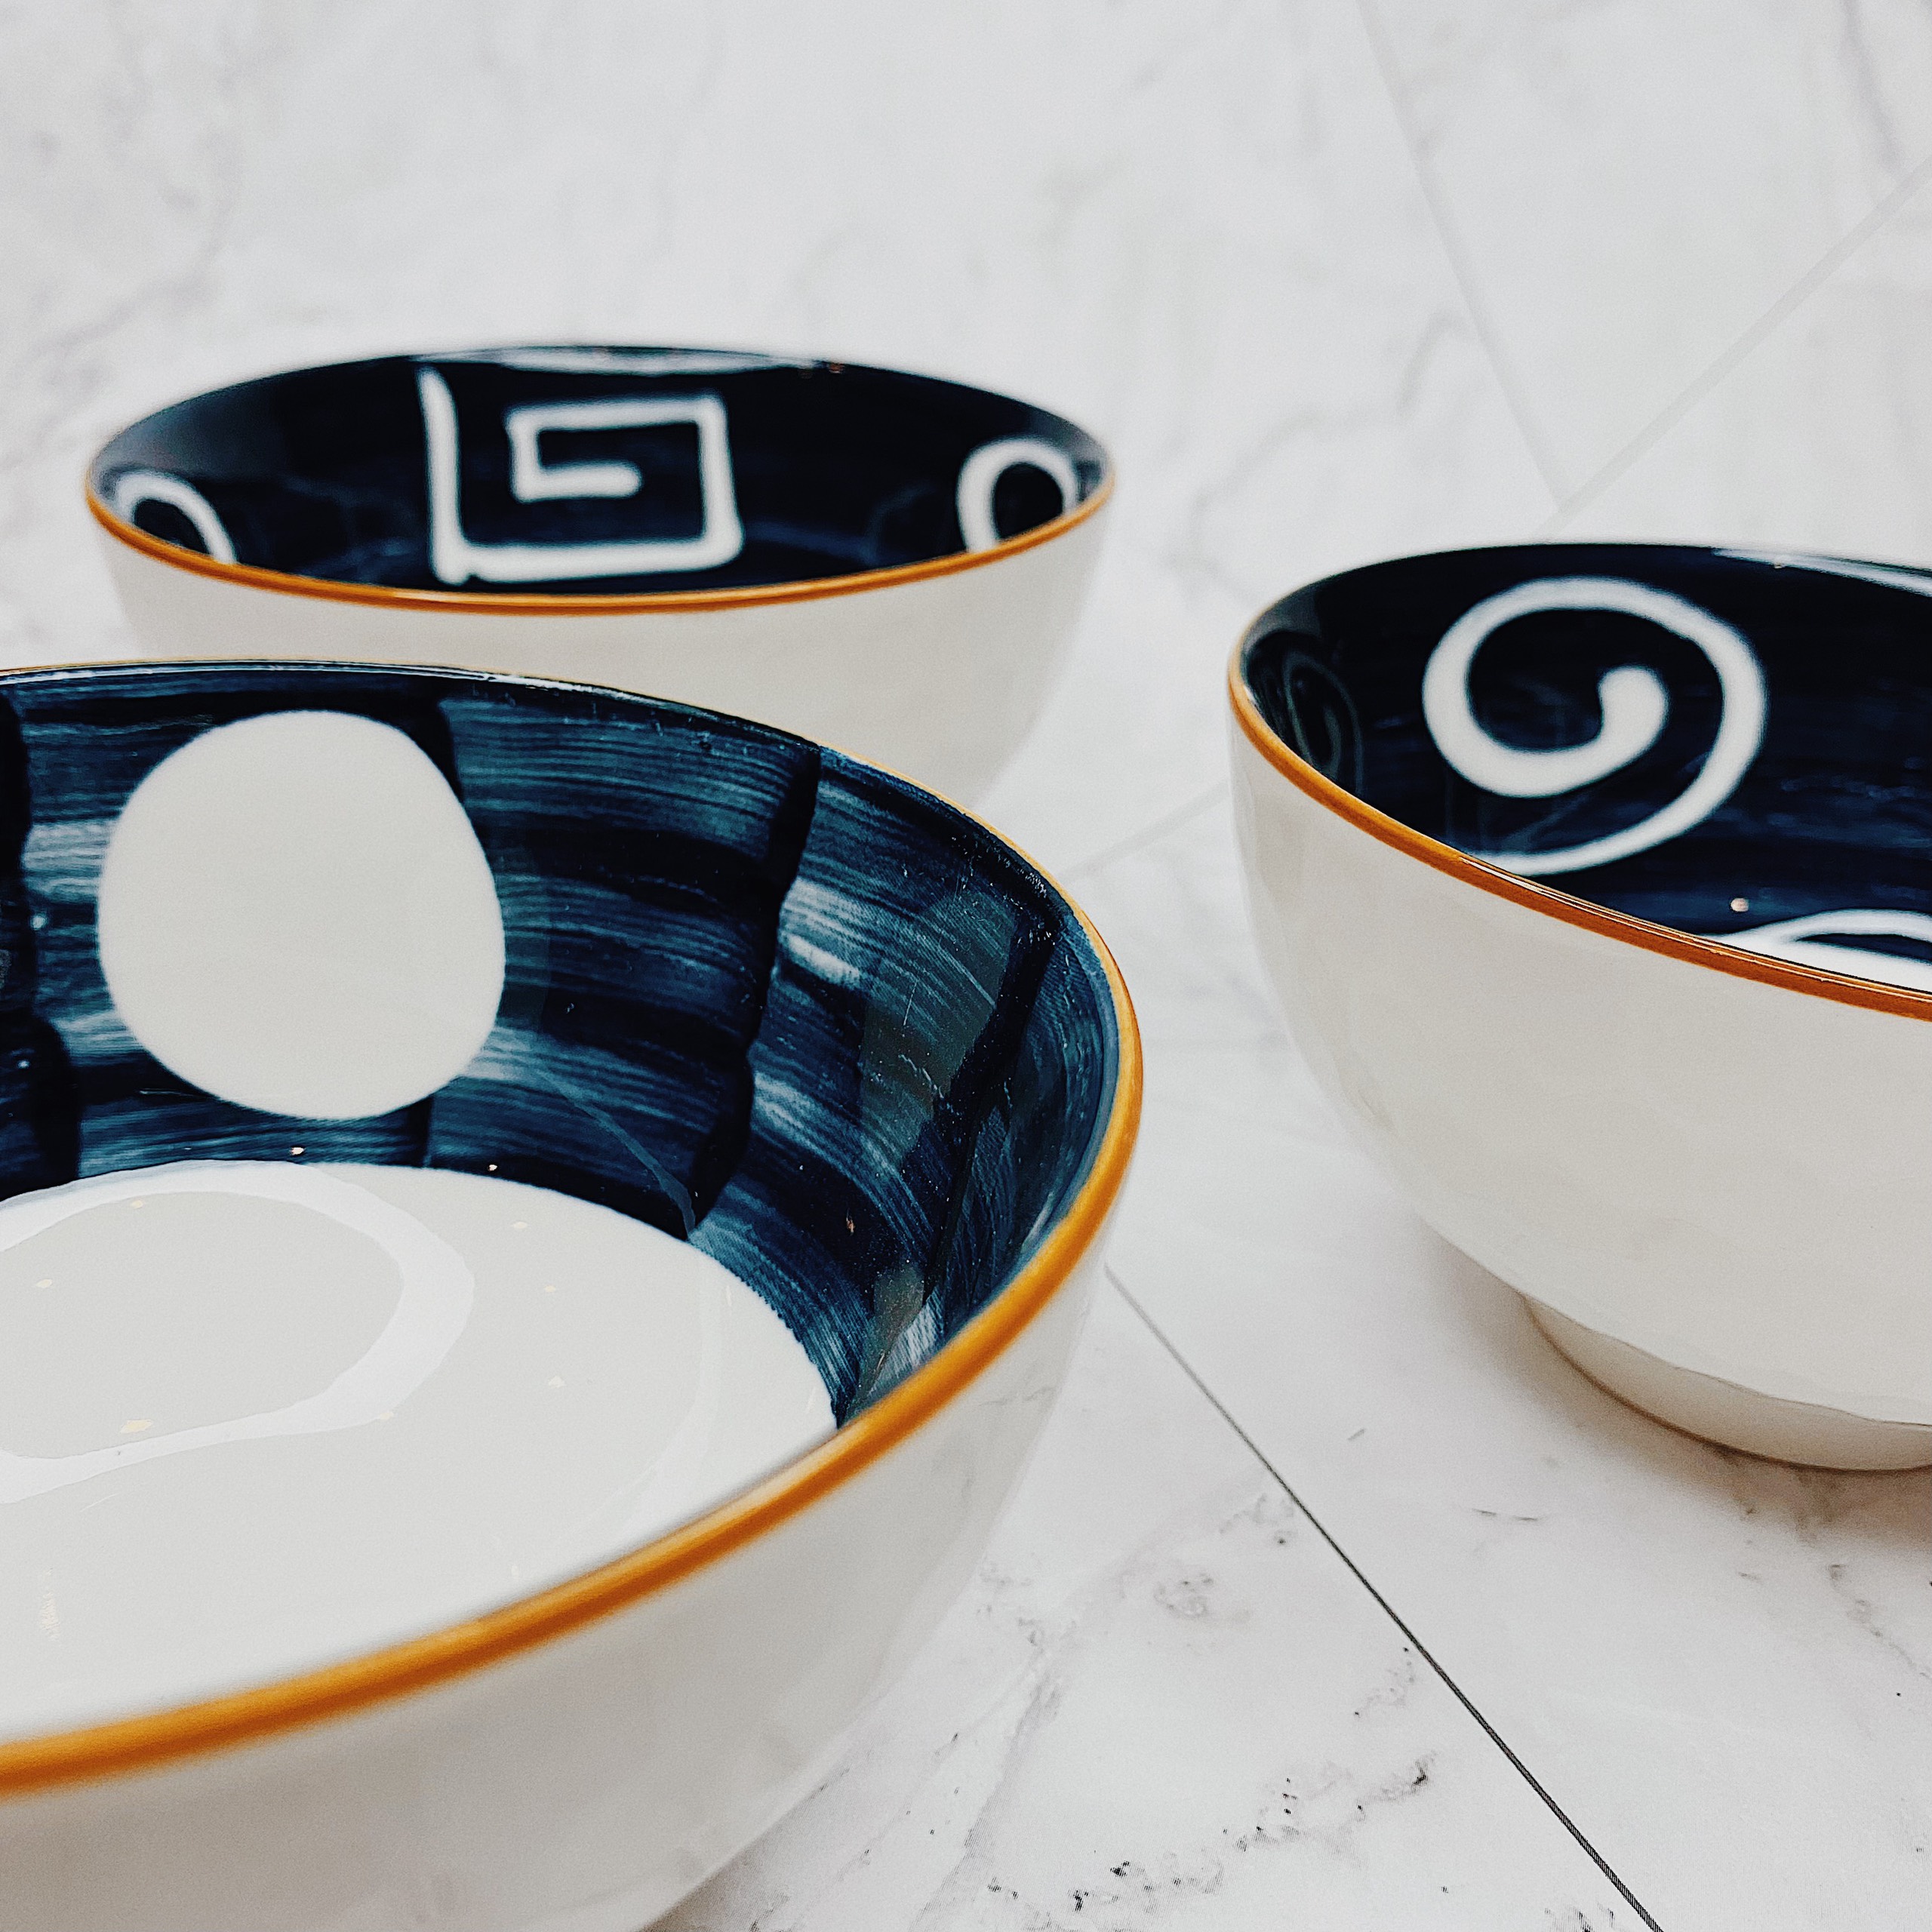 Bộ 6 chén (bát) cơm Ceramic Porcelain phong cách Nhật Bản - Hoa văn truyền thống Nhật Bản (Hộp giấy có quai xách) MFA-6R